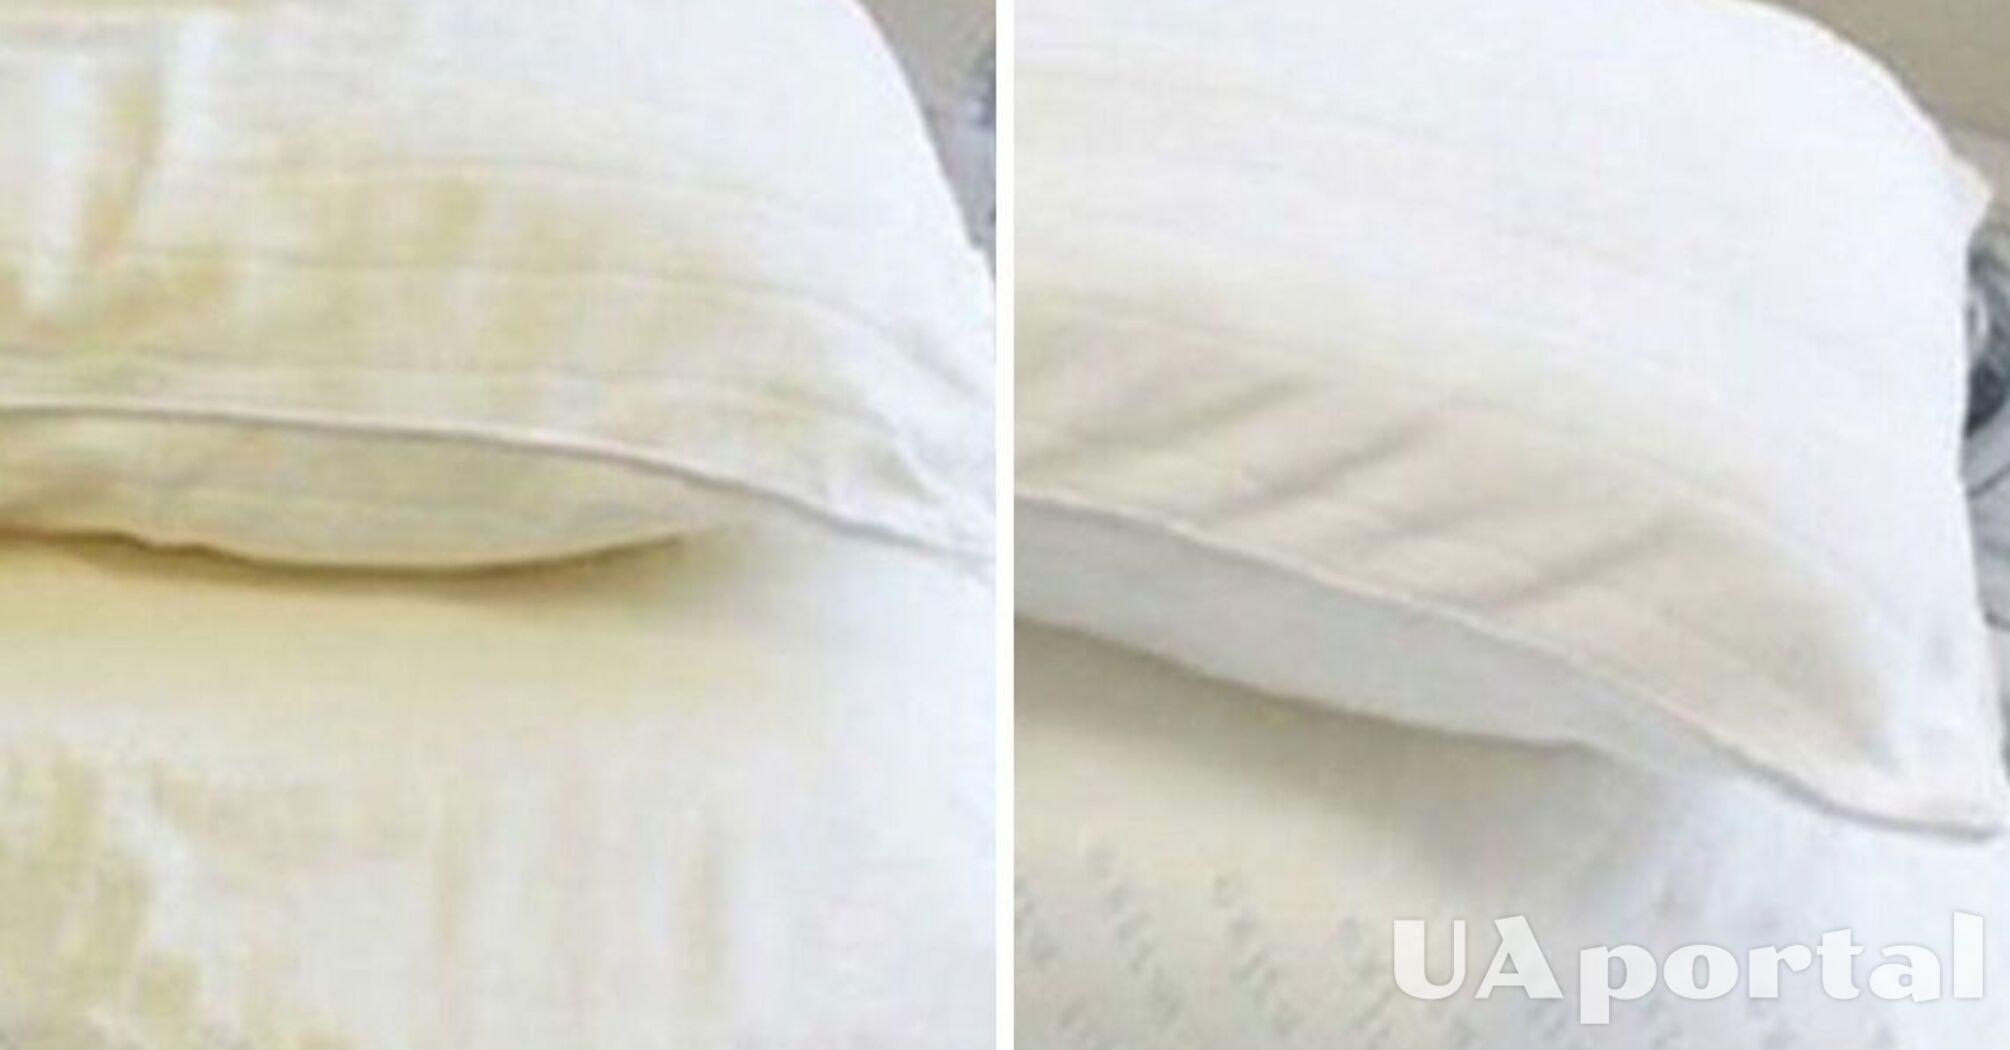 Як очистити подушки від жовтих плям: 3 бюджетні та ефективні засоби